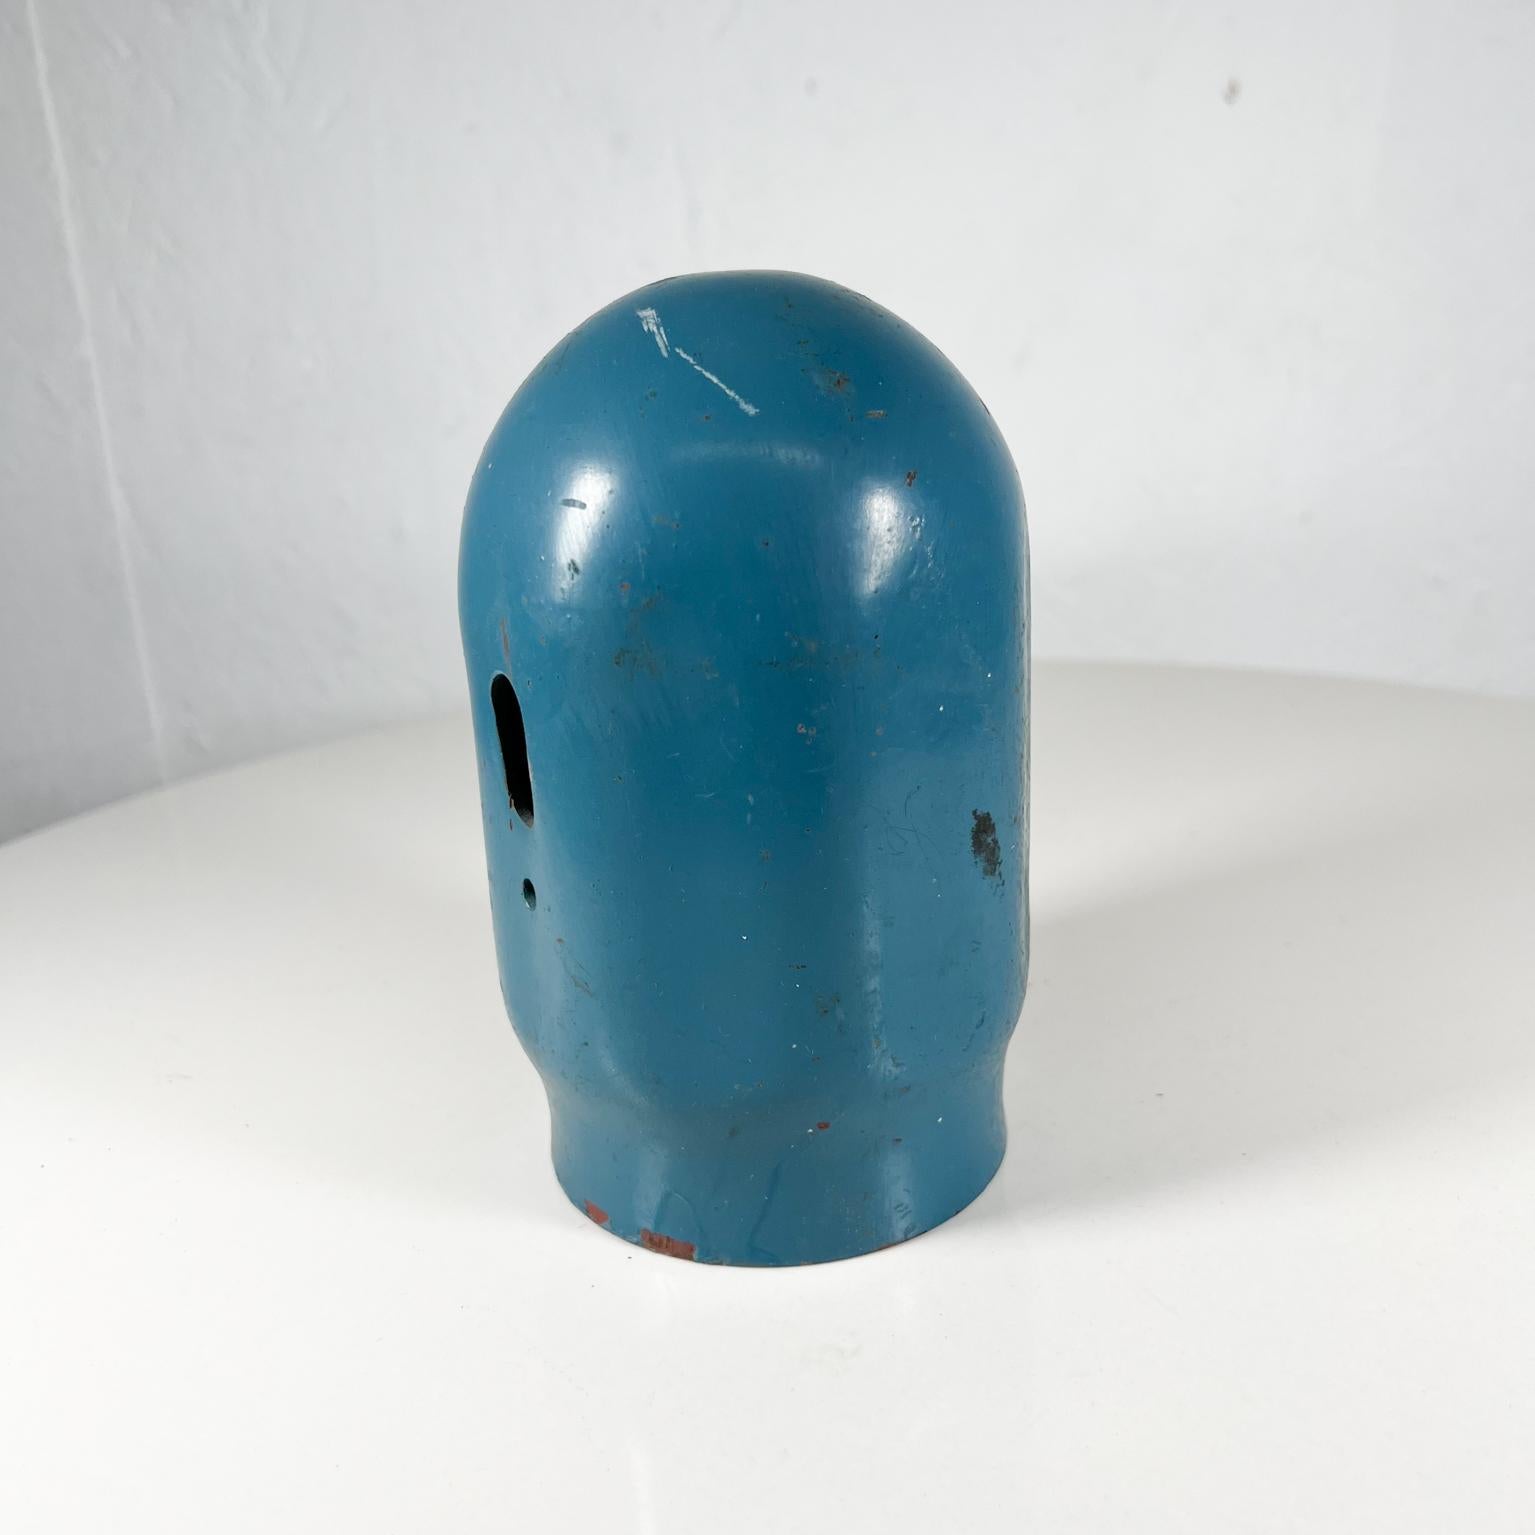 Old Vintage Blau Gewinde Gasflasche Cap (Industriell)